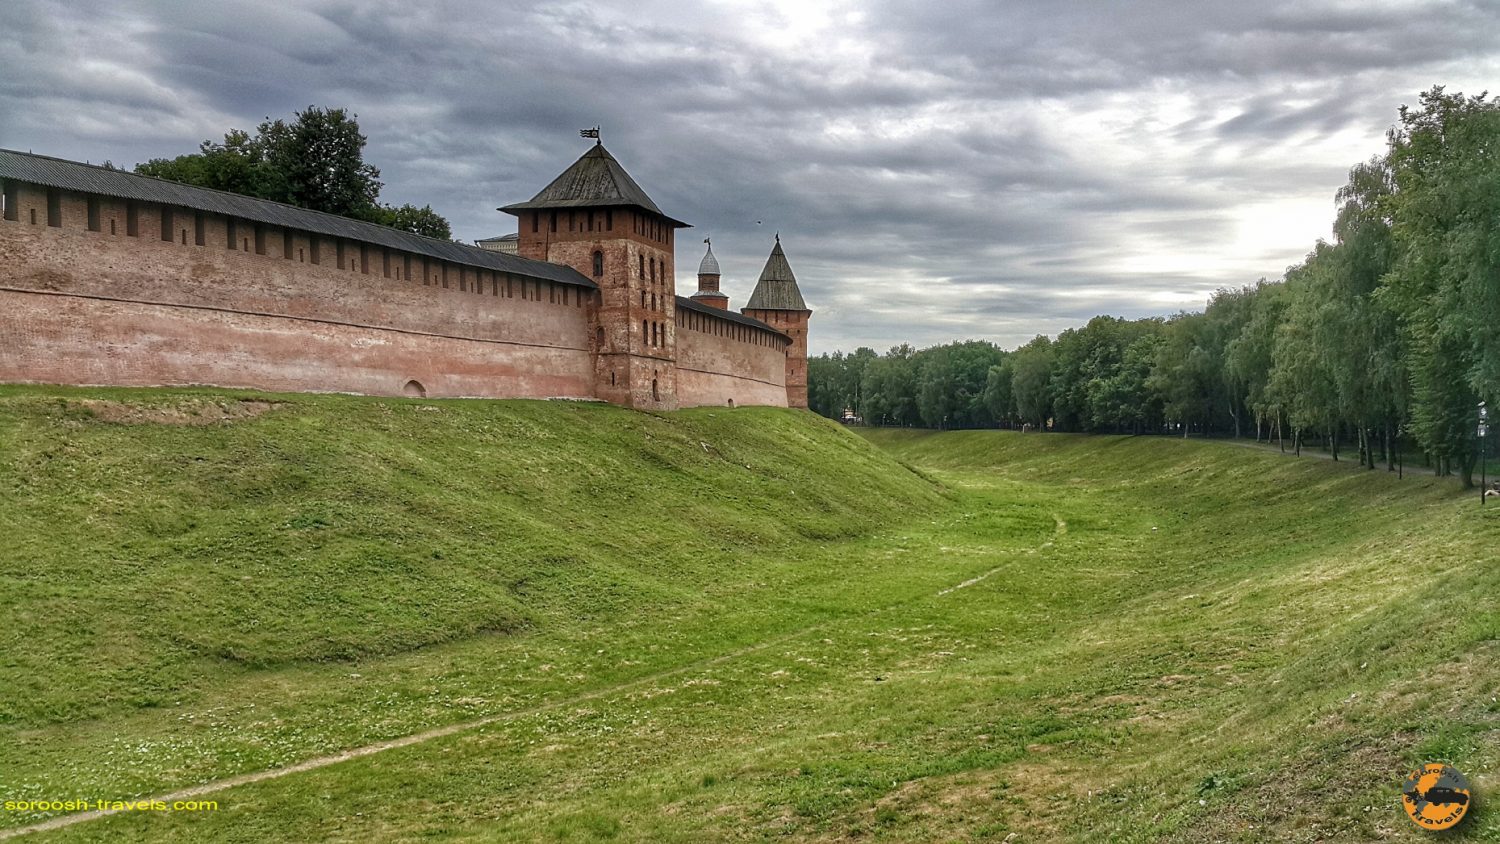 قلعه ولیکی نووگرود، روسیه - تابستان 1398 2019